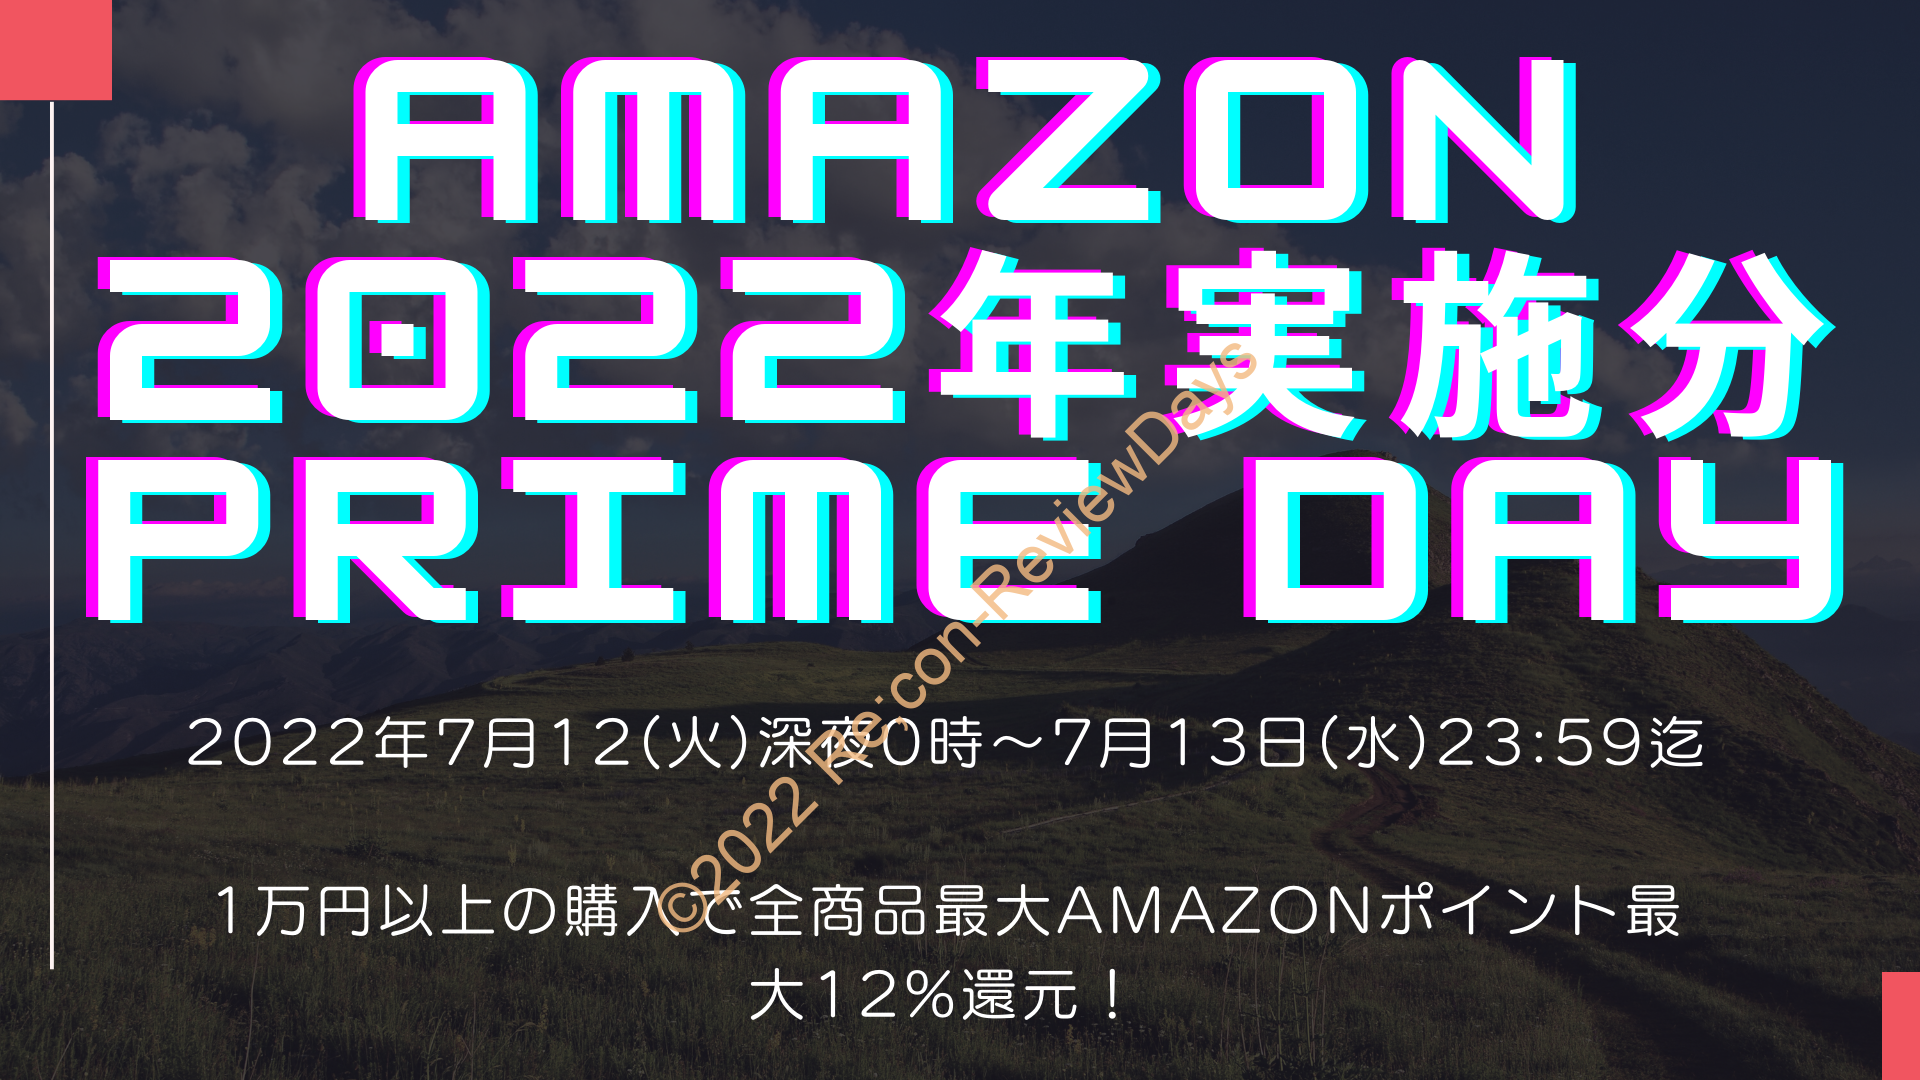 Amazonにて2022年実施分の「プライムデー2022」を7月12日(火)0時から約2日間開催 #Amazon #アマゾン #セール #特価 #タイムセール #PrimeDay #プライムデー